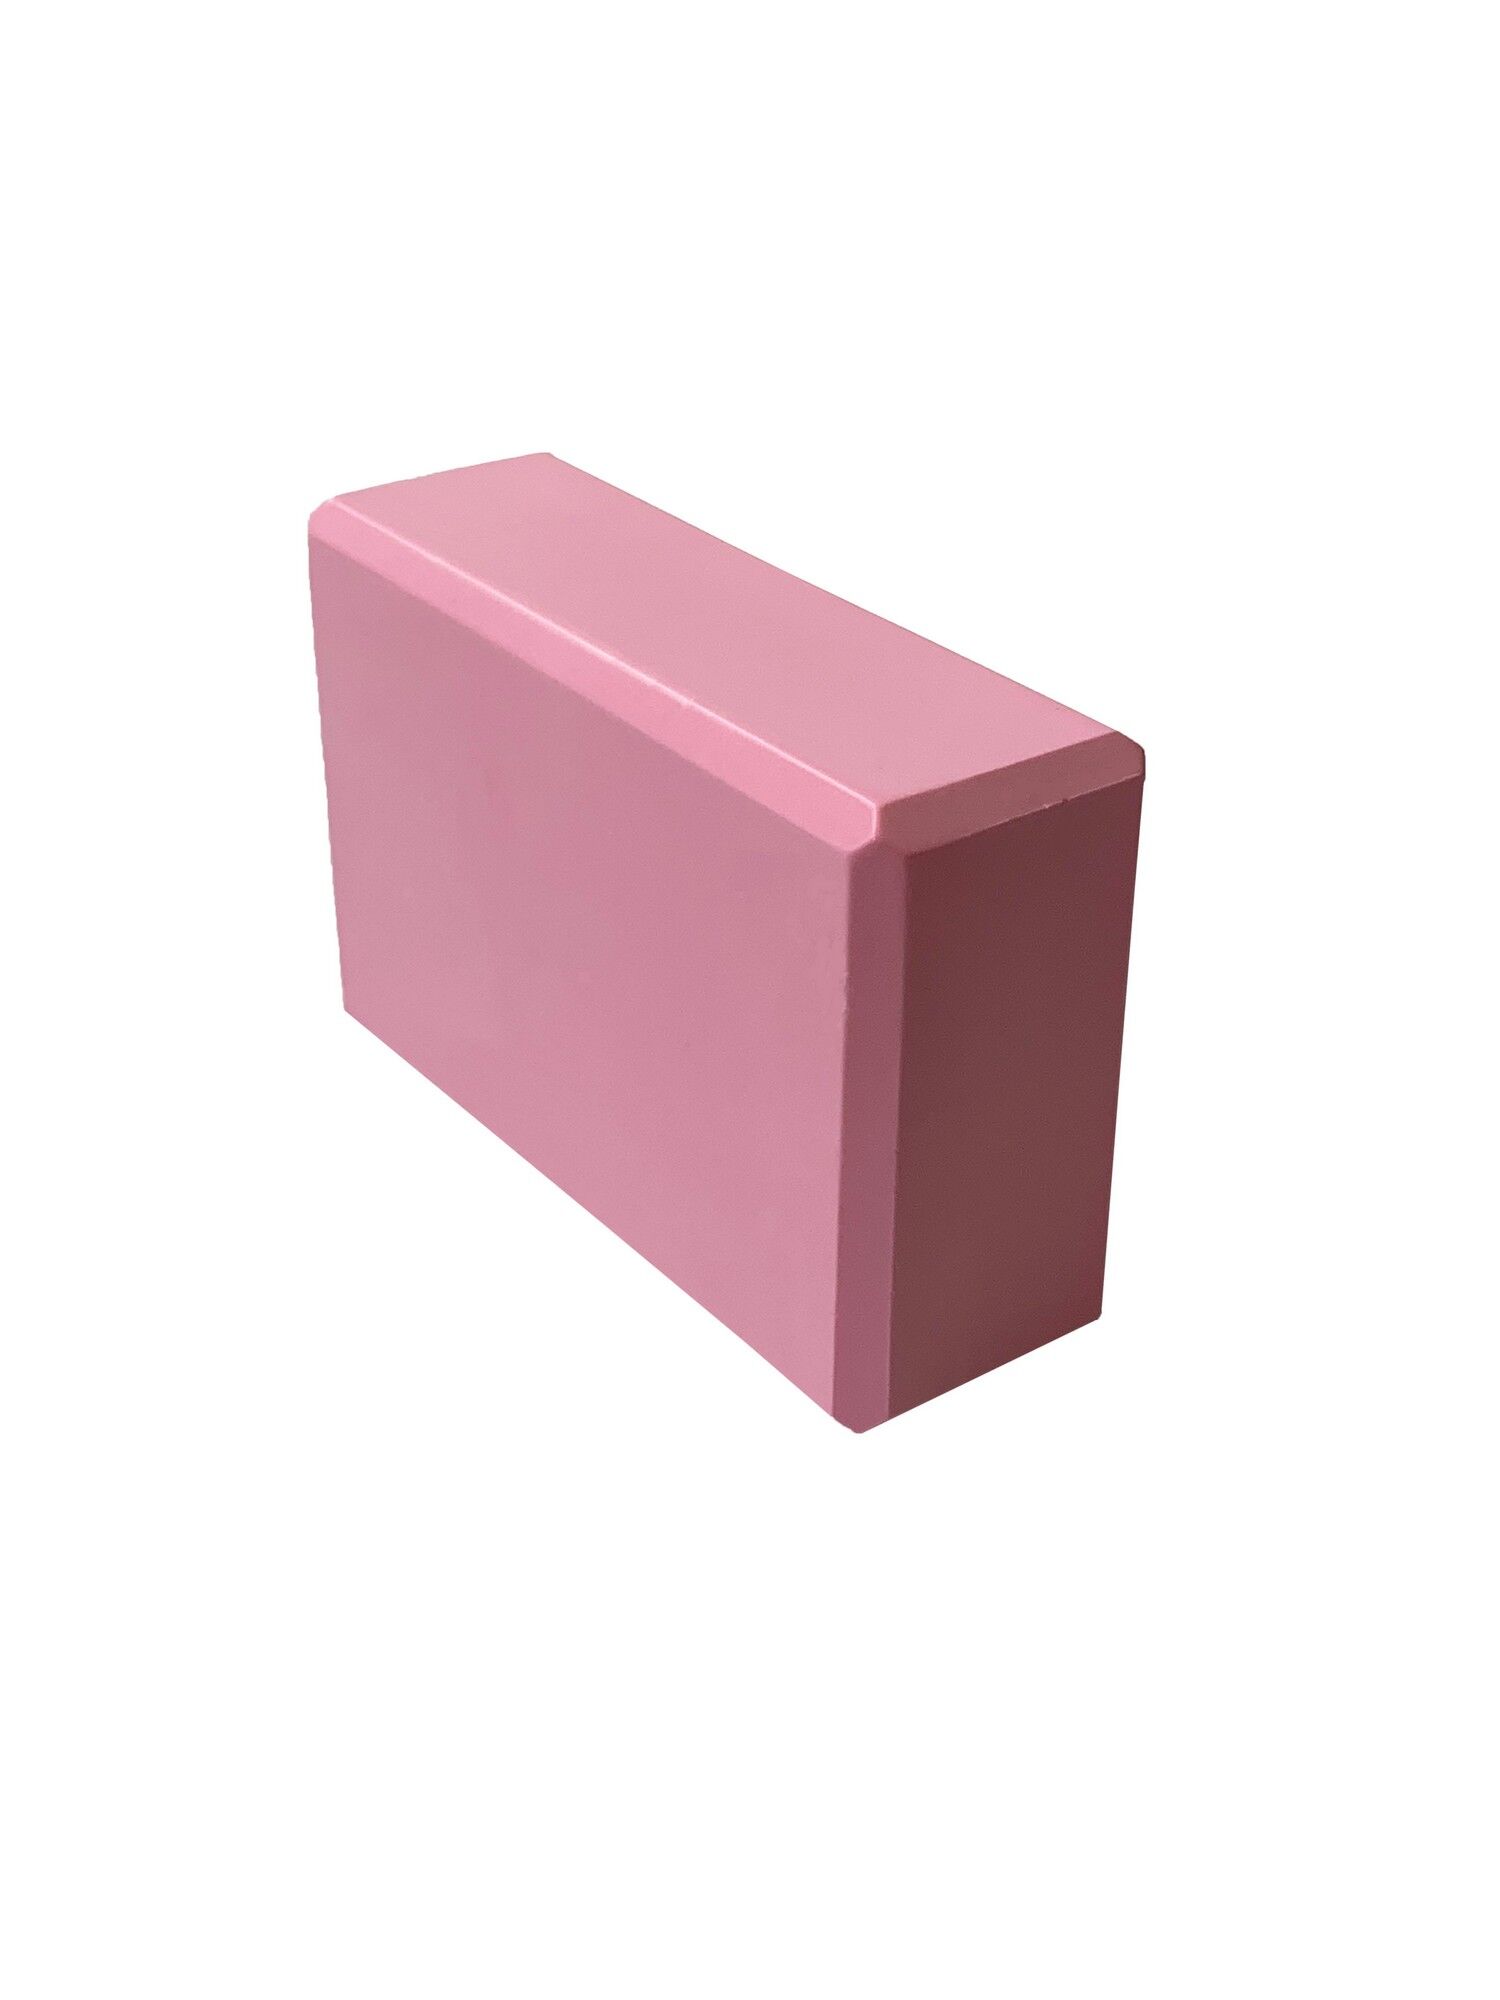 Йога блок полумягкий (розовый) 223х150х76мм., из вспененного ЭВА E39131-35 ST